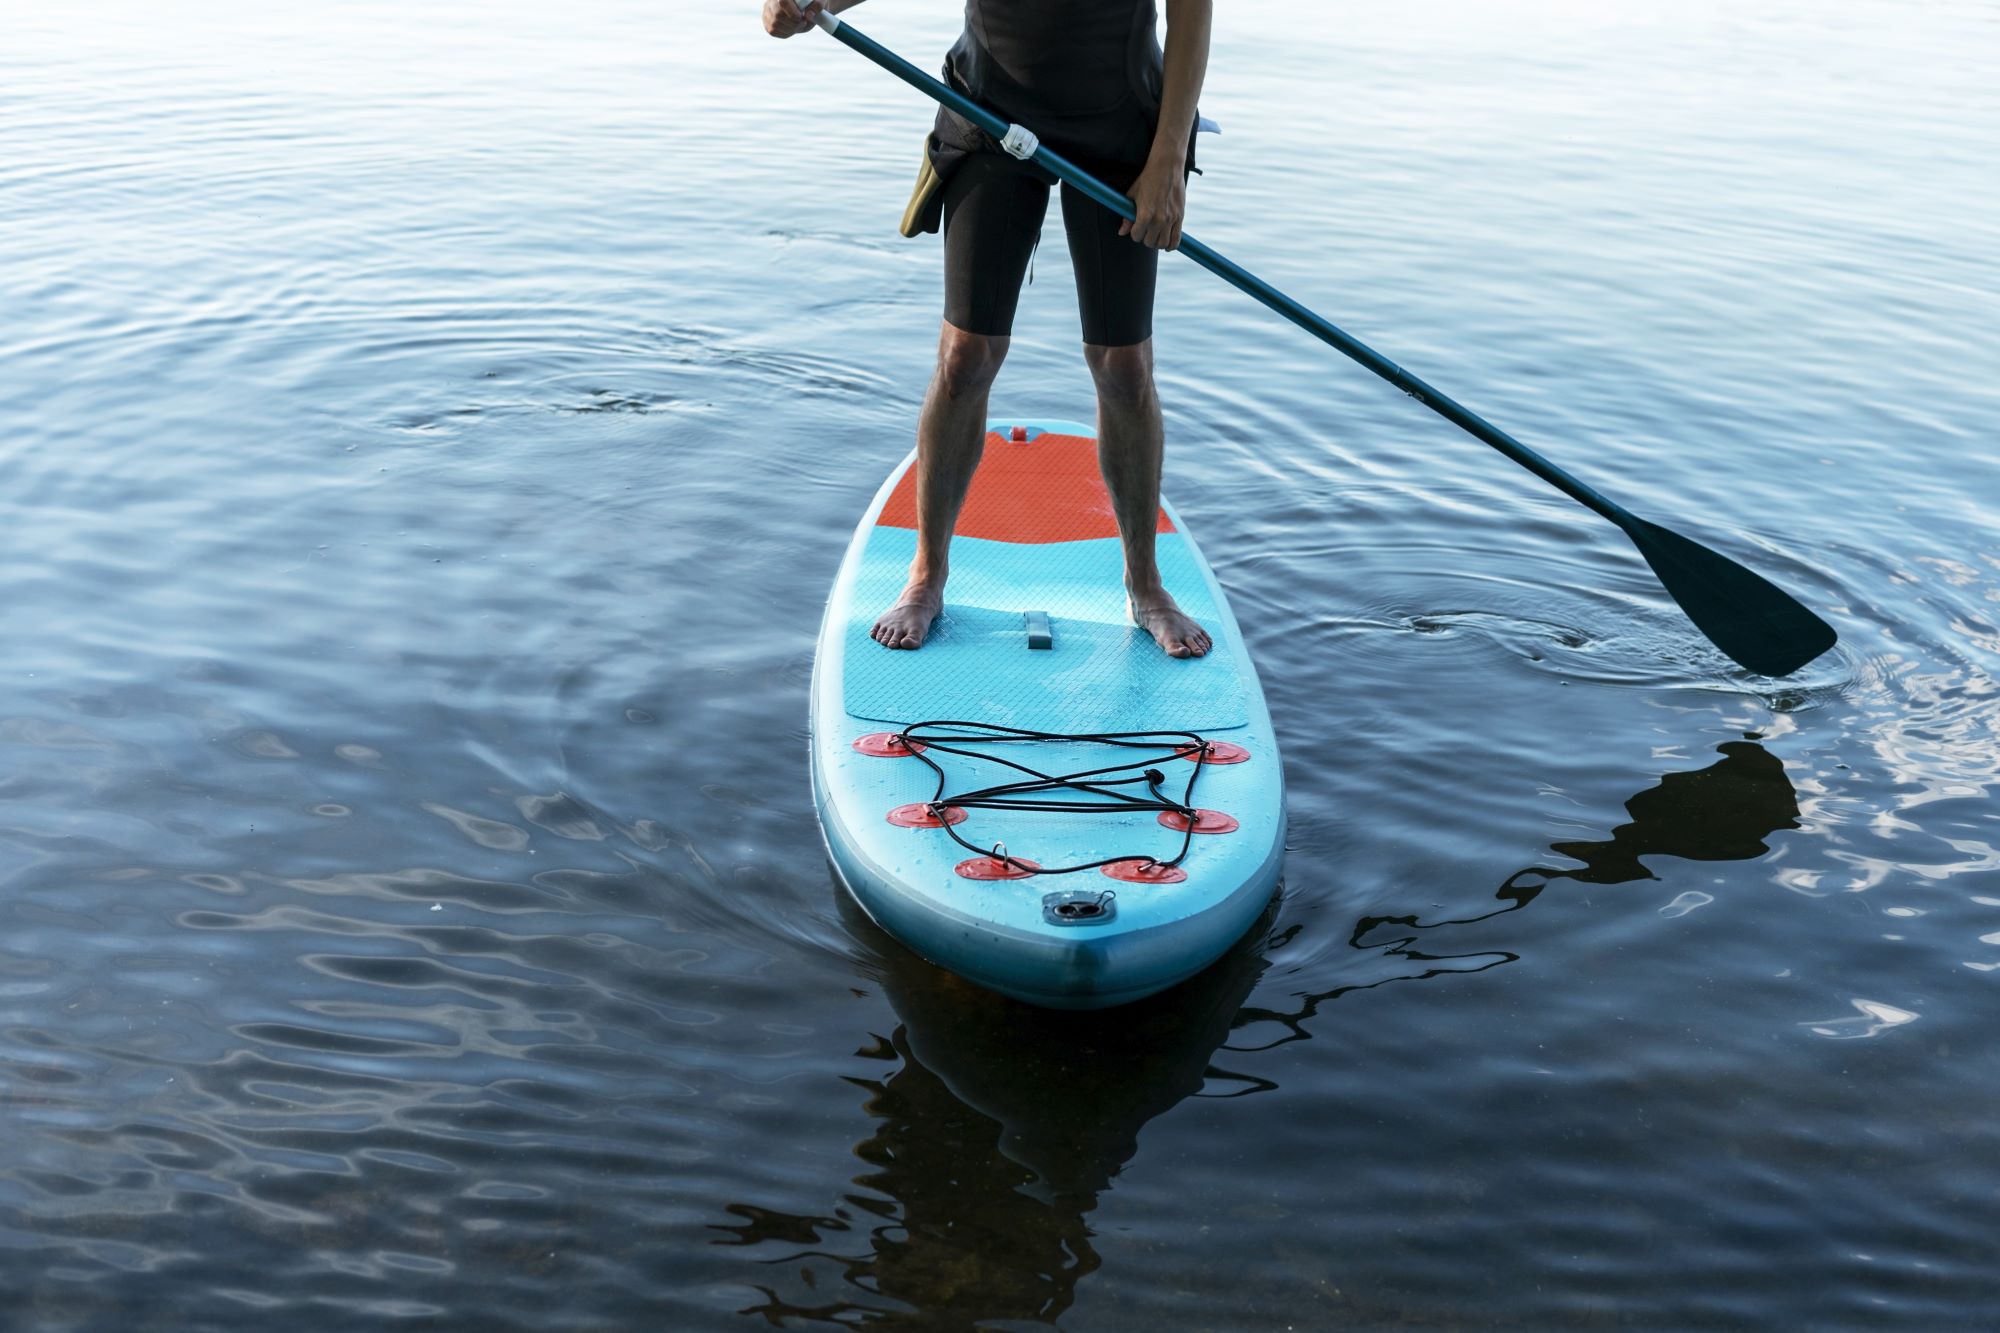 Esplora le acque del Lago di Garda a Torbole con una suggestiva sessione di Stand Up Paddle (SUP), l'avventura perfetta per gli amanti degli sport acquatici